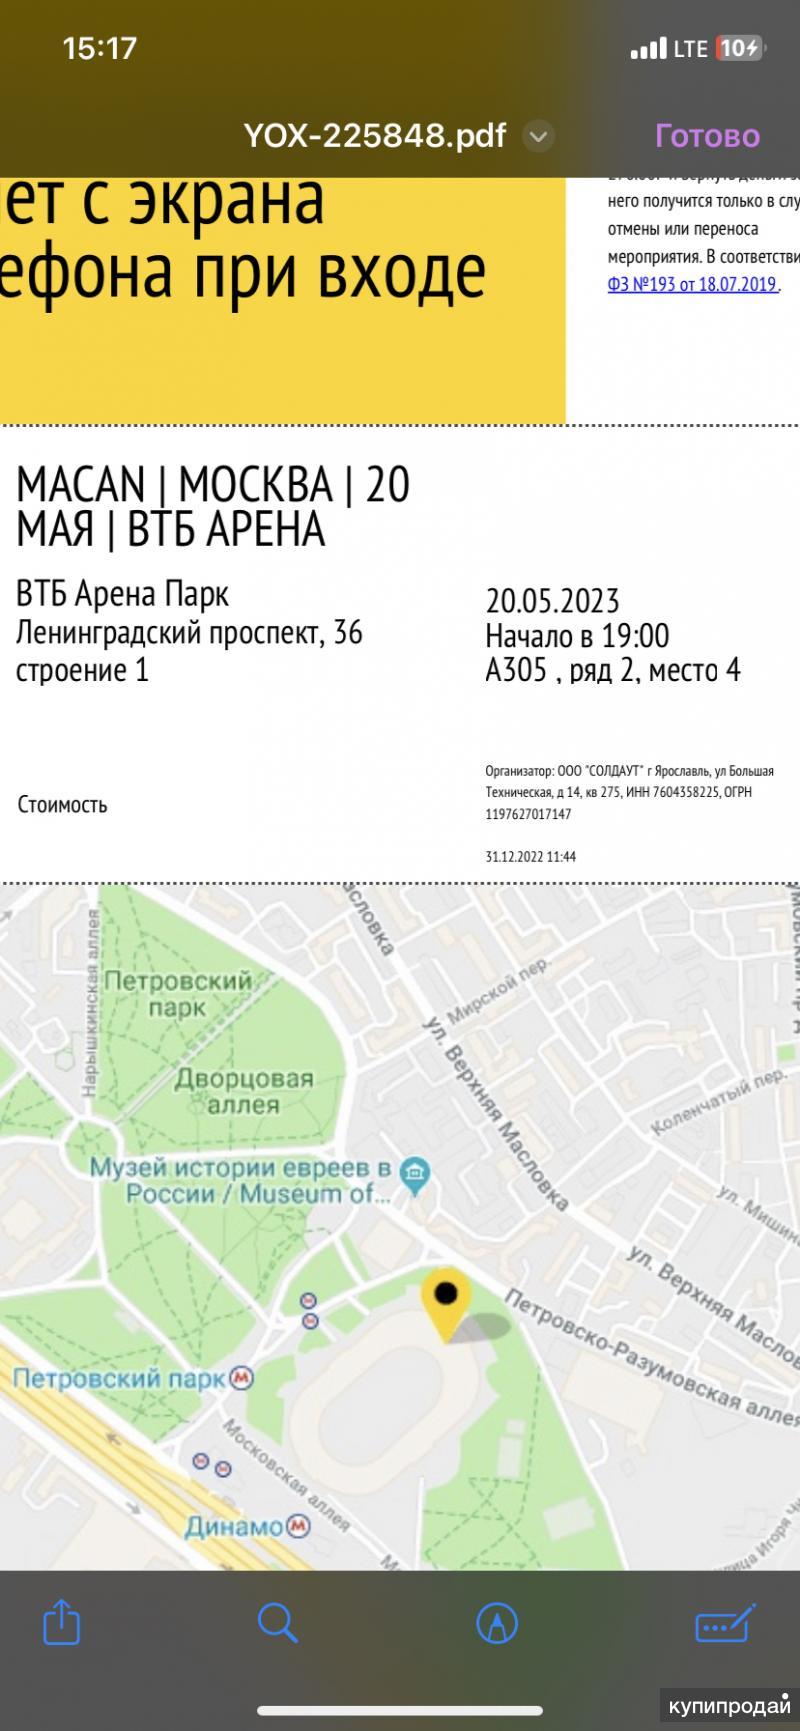 Макан концерт в москве купить билеты. Макан концерт 21 мая. Билеты на Макана Москва. Макан 20. Билет на Макана.